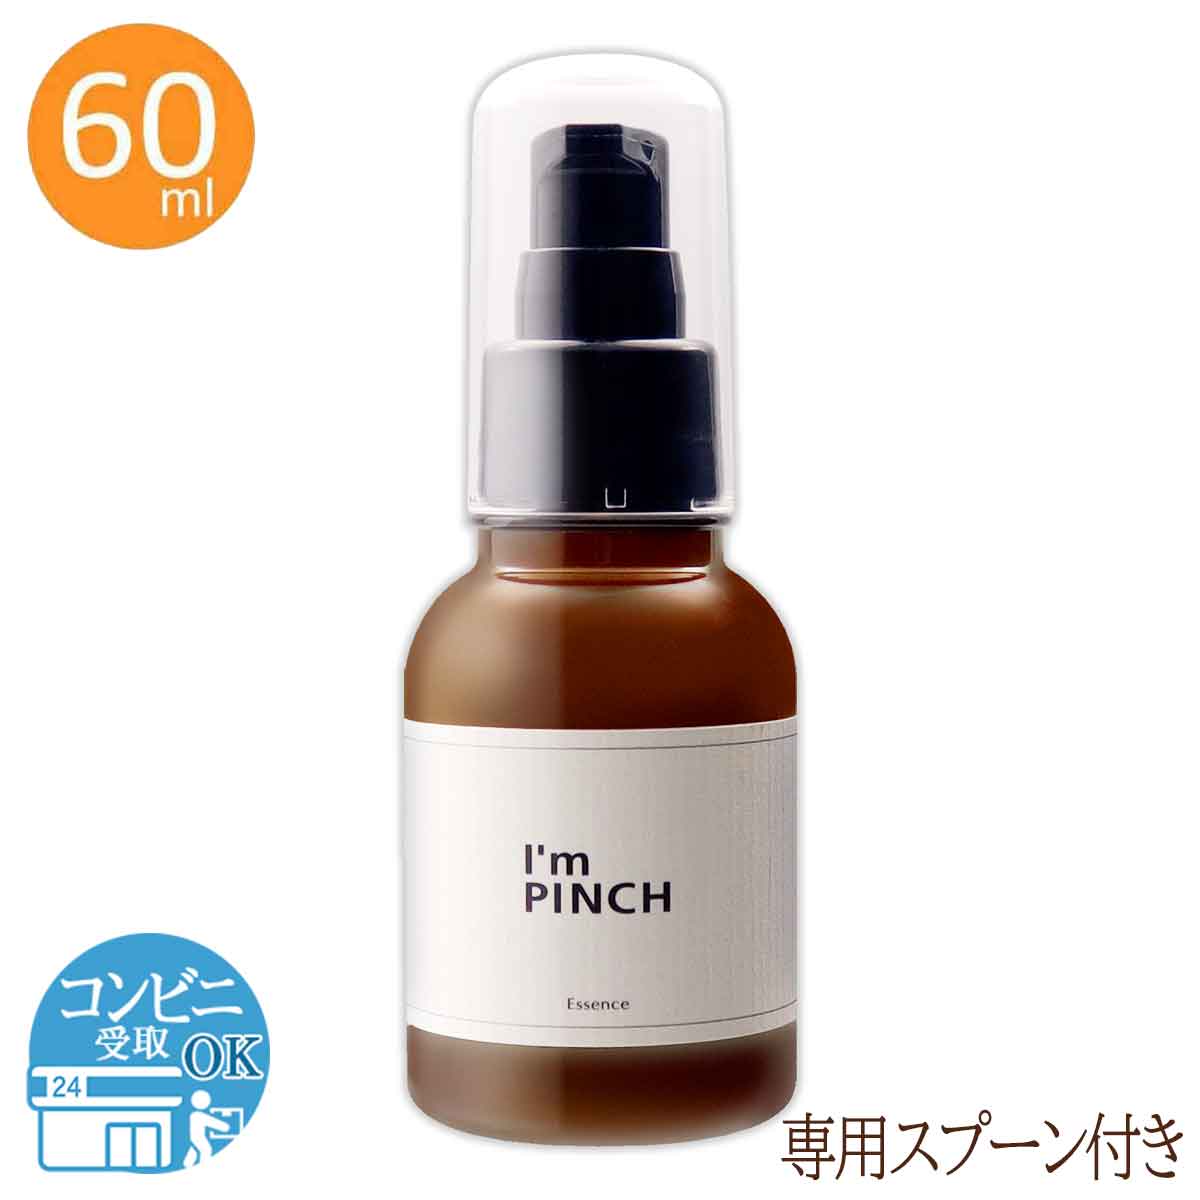 アイムピンチ美容液  I'm PINCH 60ml 未来 アイムピンチ 美容液 スキンケア 配送料無料NYH / アイムピンチ60mlF04-L9 / PNCH60-01P